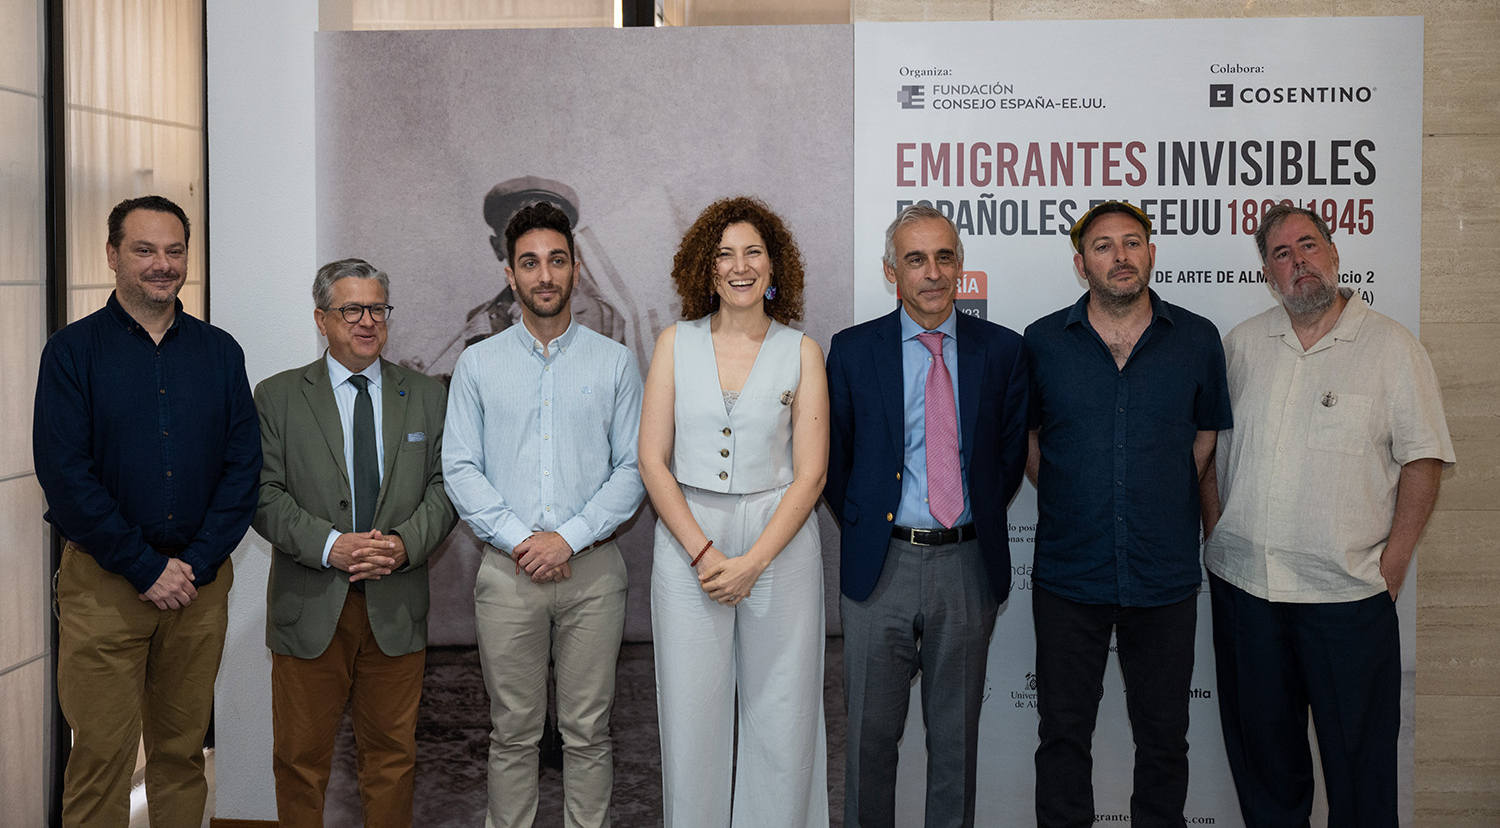 Foto de familia inauguración Emigrantes invisibles en Almería